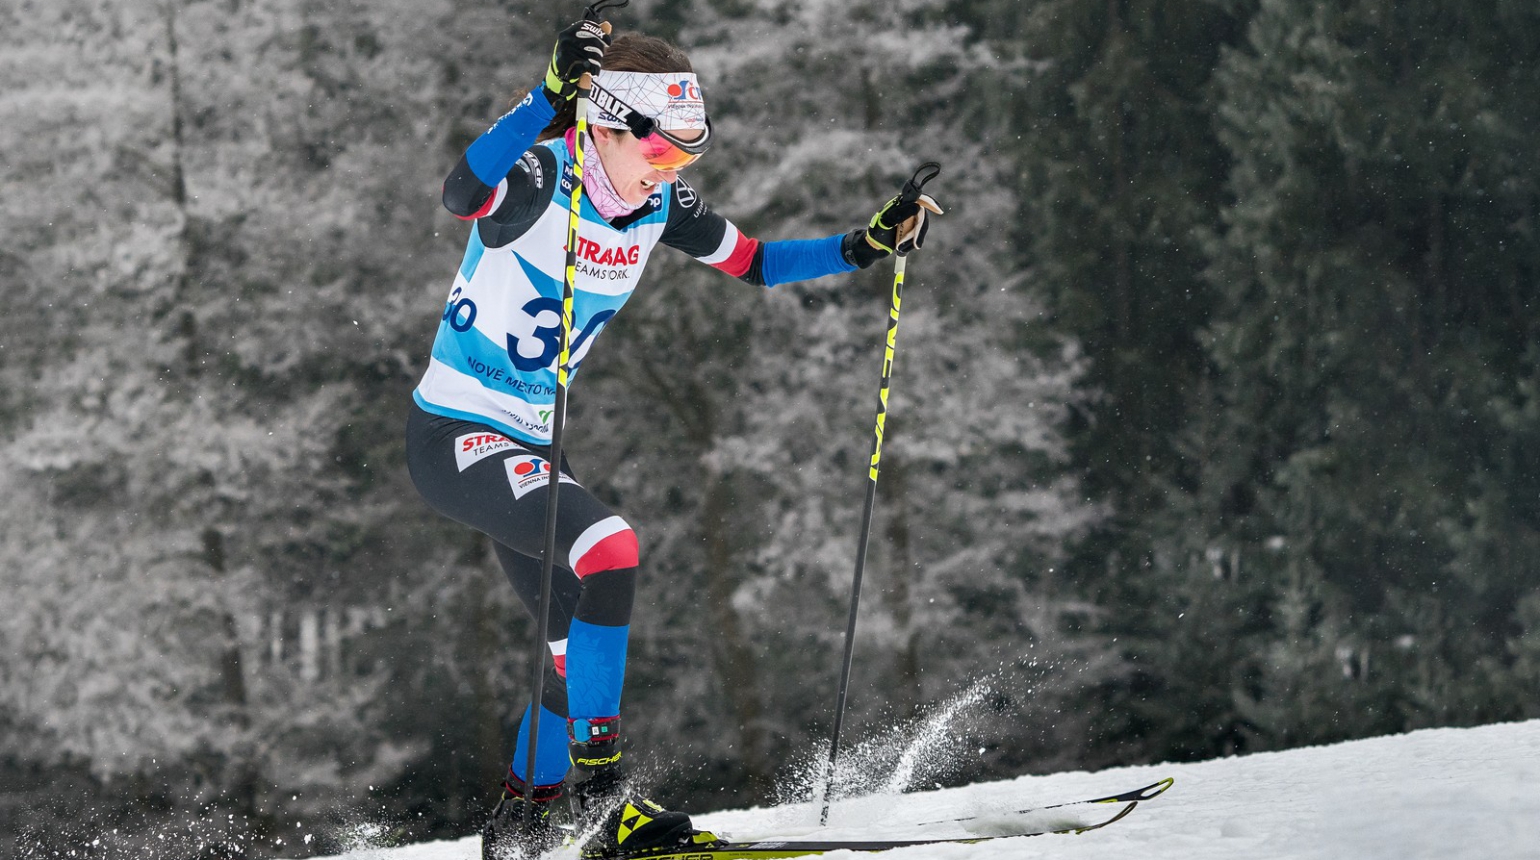 Tour de Ski: Razýmová se ve stíhačce probila do elitní desítky! V Toblachu si dojela pro 9. místo